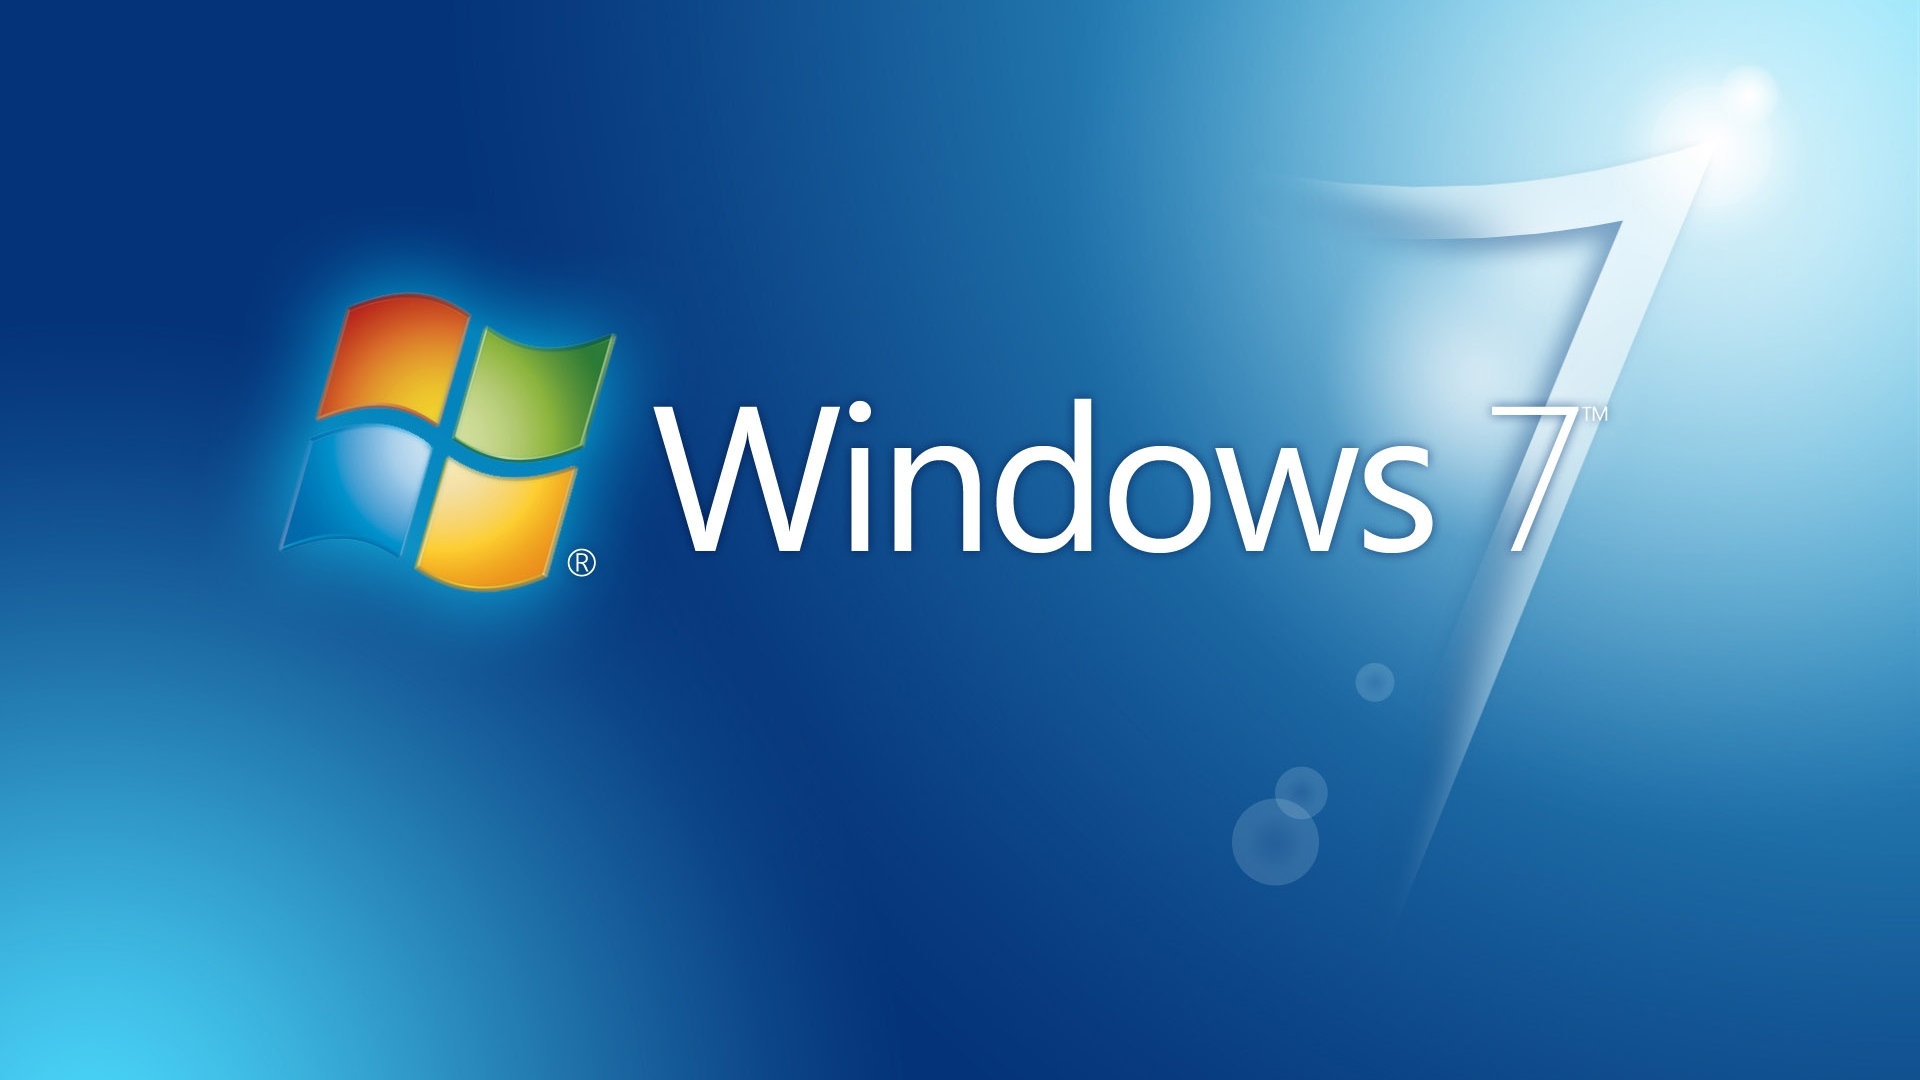 Windows 7 bị đóng băng khi khởi động: Sự cố khởi động máy tính Windows 7 bị đóng băng thường gây khó chịu cho người dùng. Nhưng đừng lo, chúng tôi có thể giúp bạn giải quyết vấn đề này một cách dễ dàng và nhanh chóng. Hãy xem qua hình ảnh liên quan để tìm giải pháp phù hợp nhất với máy tính của bạn.